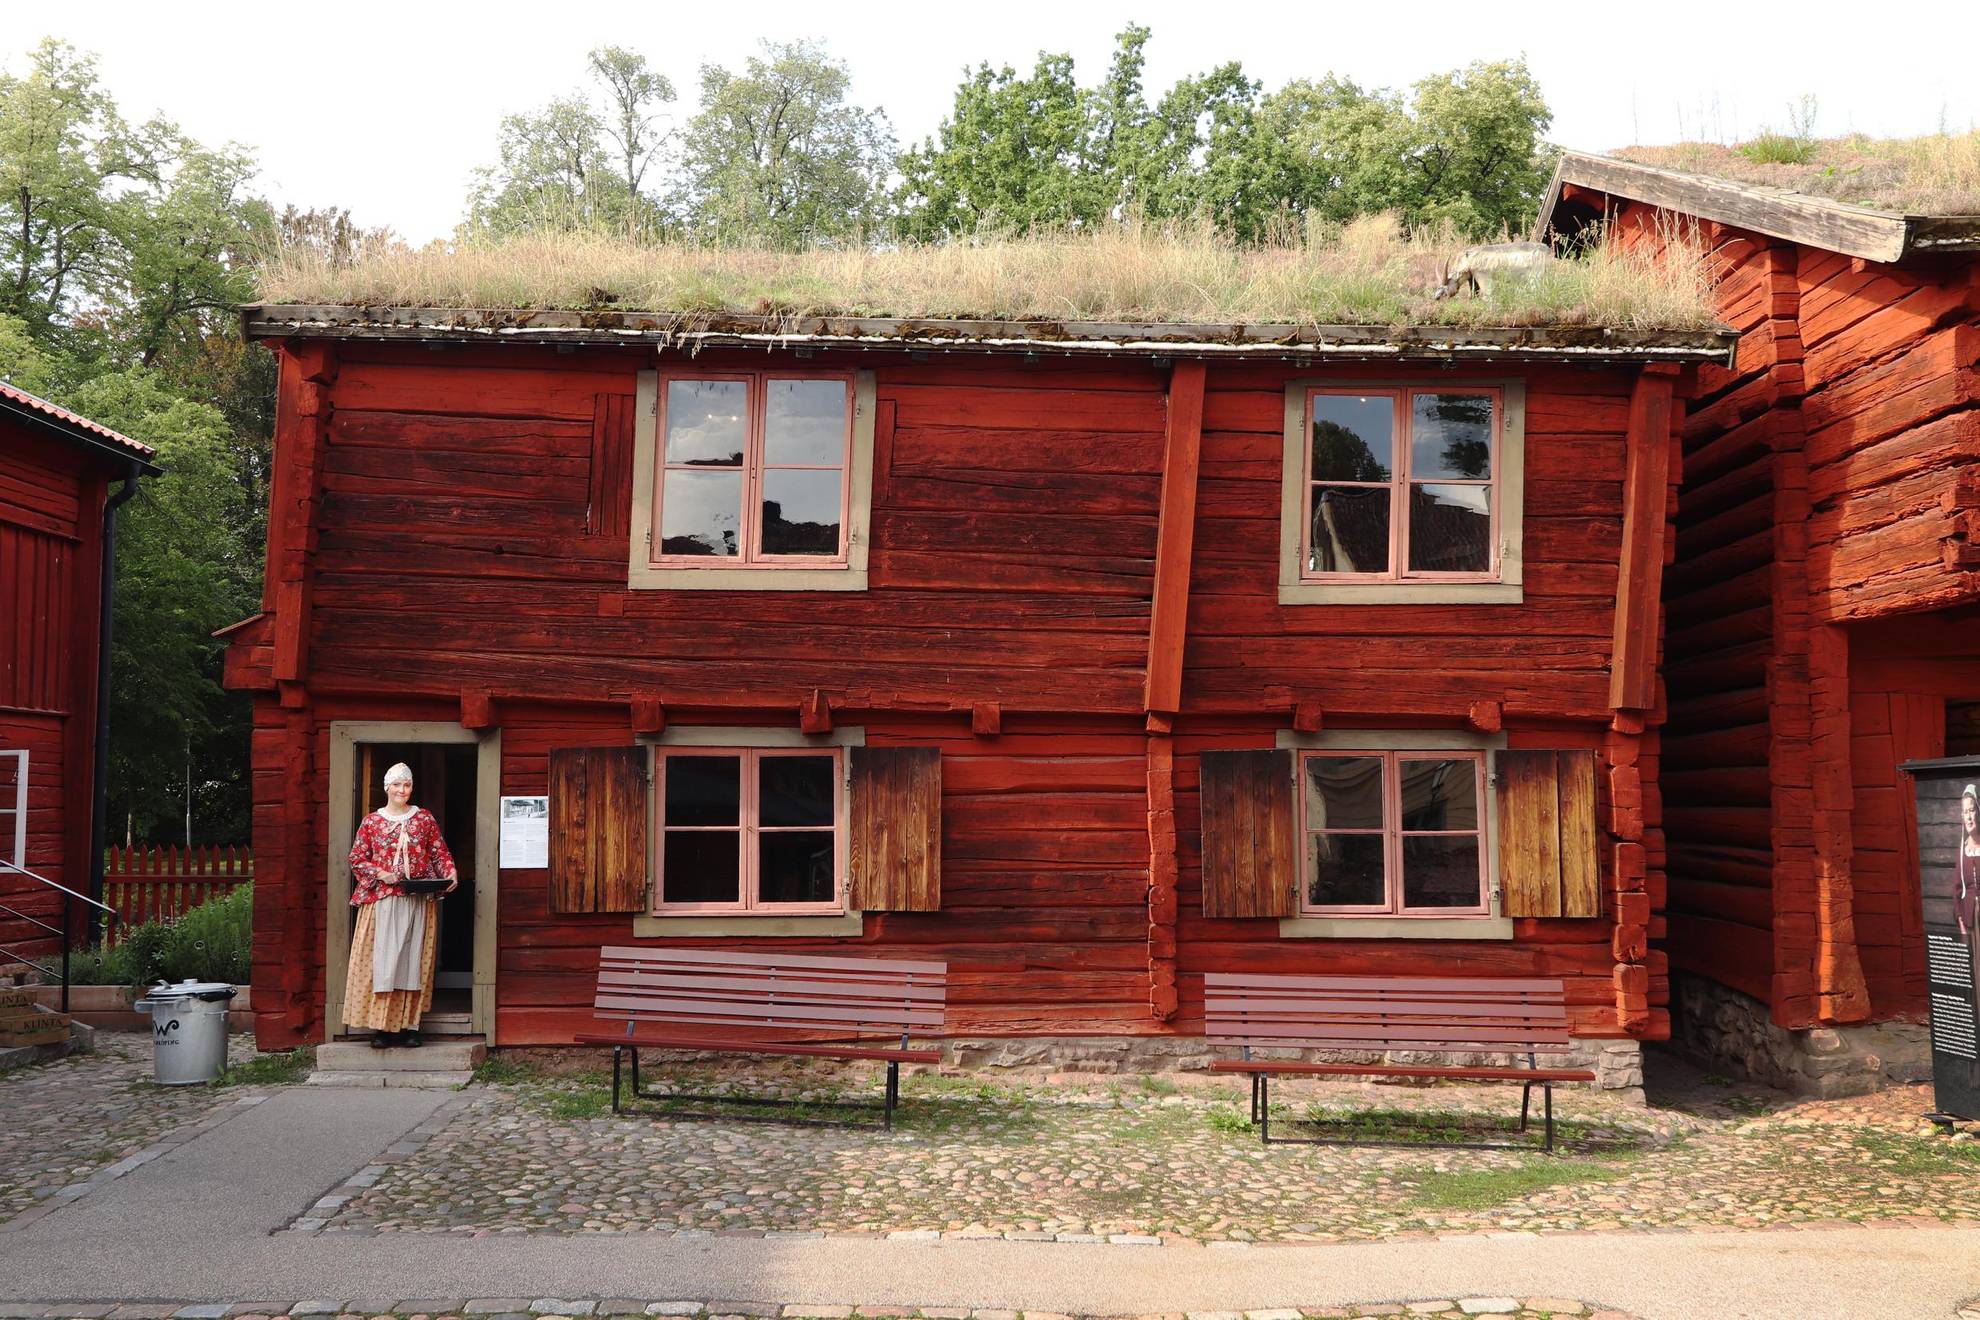 Une ancienne maison en bois peinte en rouge avec un toit en terre. Une femme se tient debout au niveau de l'entrée de la maison.